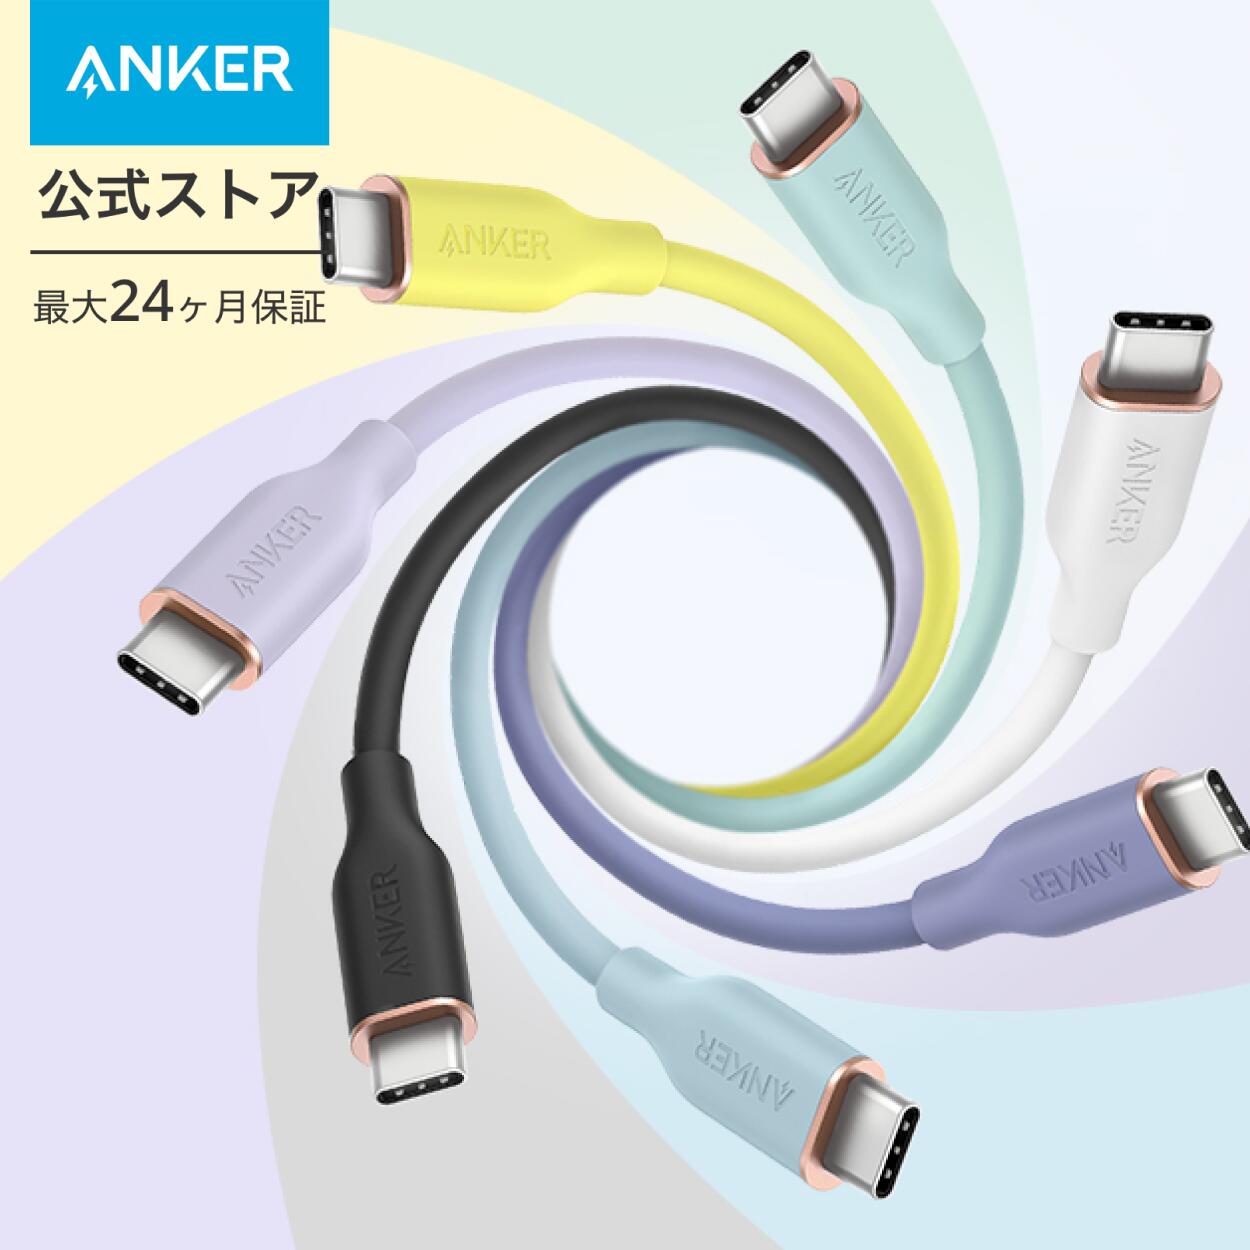 【一部あす楽対応】Anker PowerLine III Flow USB-C USB-C ケーブル Anker絡まないケーブル PD対応 シリコン素材採用100W Galaxy iPad Pro MacBookPro/Air 各種対応 0.9m/1.8m